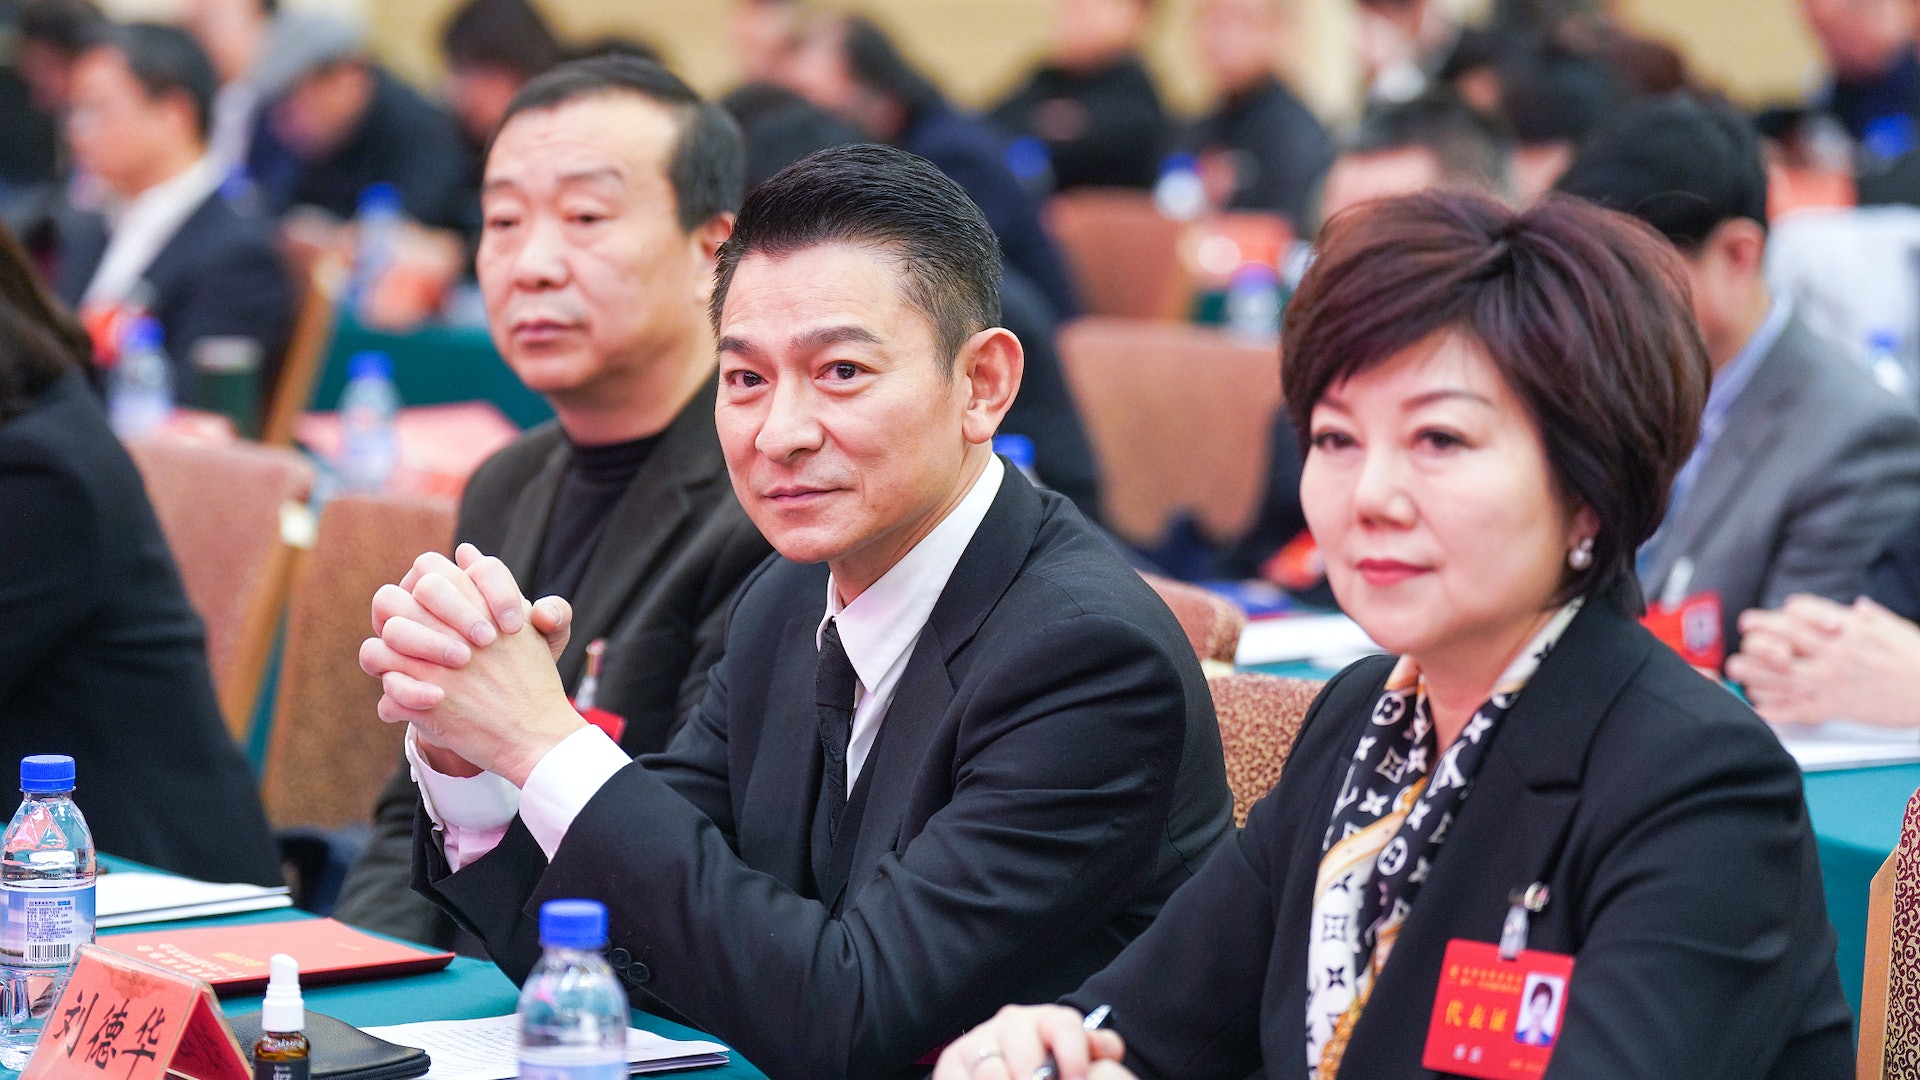 劉德華接棒成龍當選中國電影家協會副主席陳道明連任主席